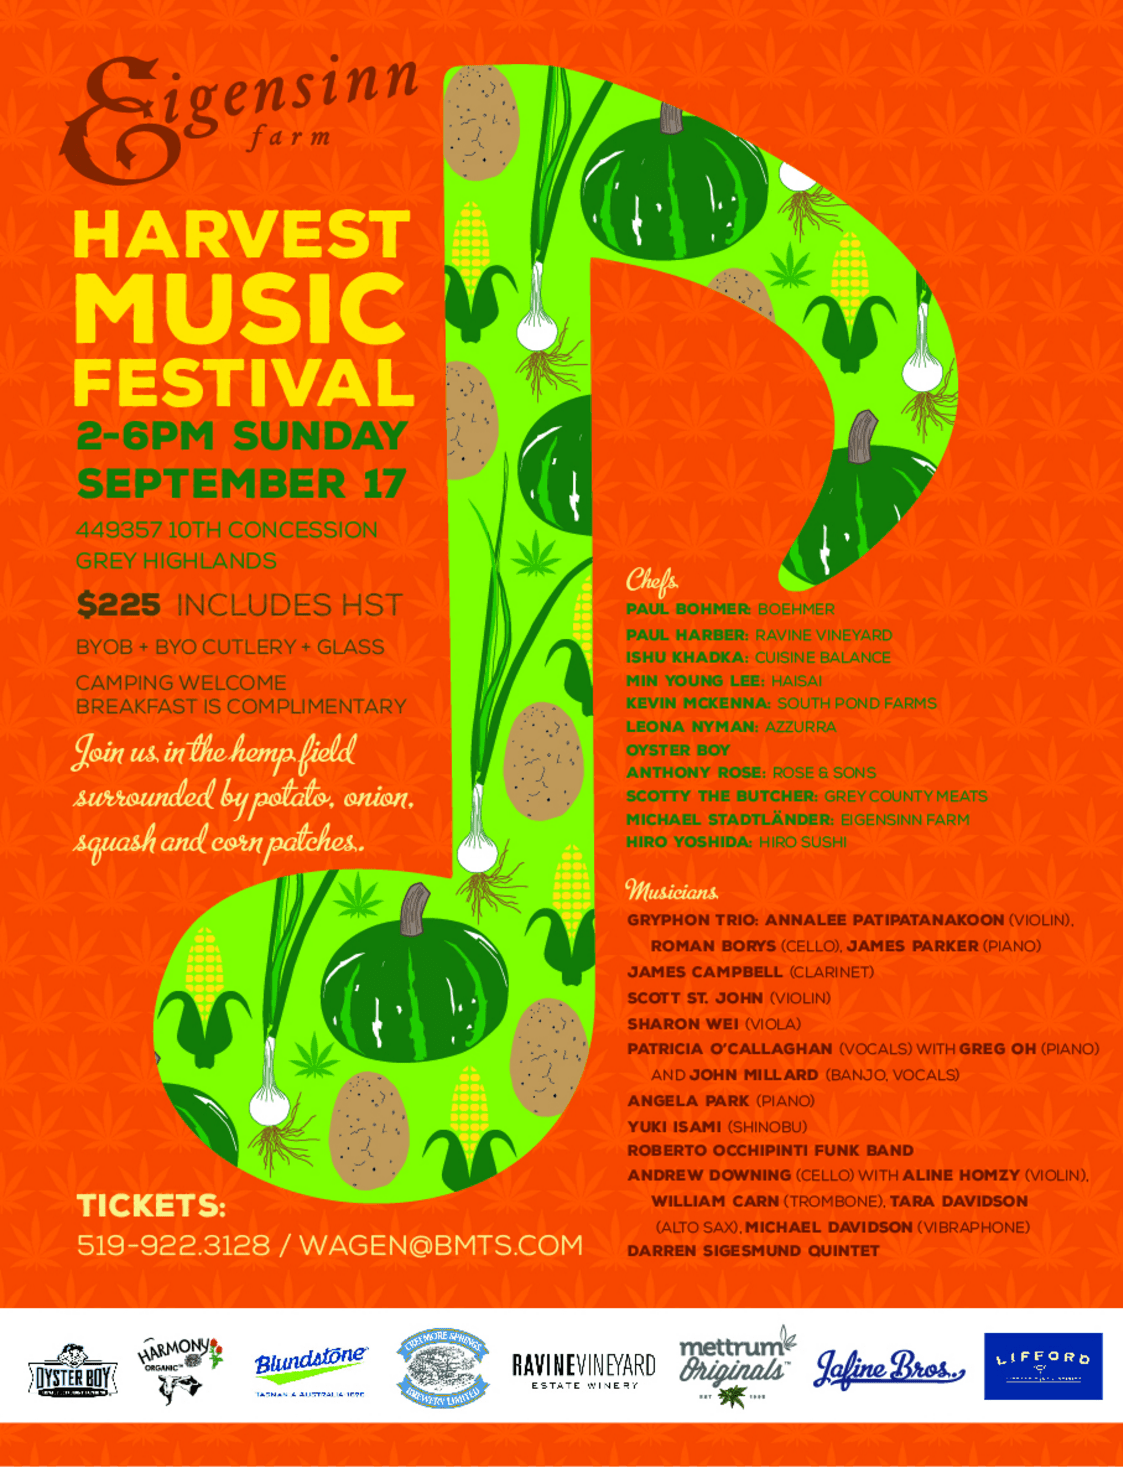 Eigensinn Farm Harvest Music Festival – Sunday September 17